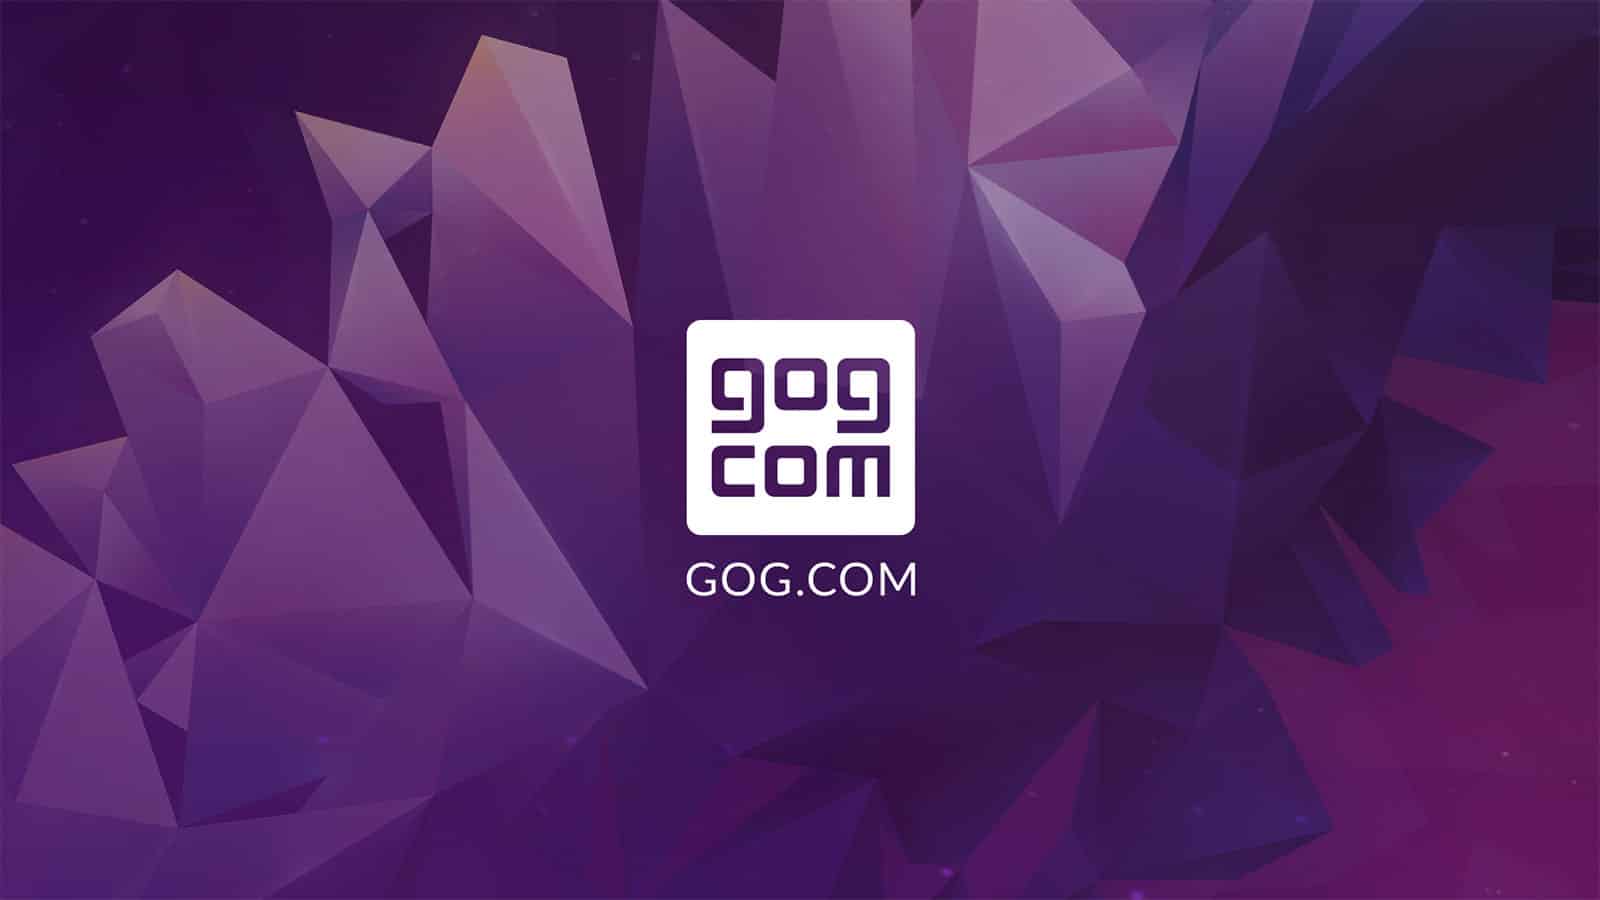 CD Projekt's game distribution platform GOG wallpaper